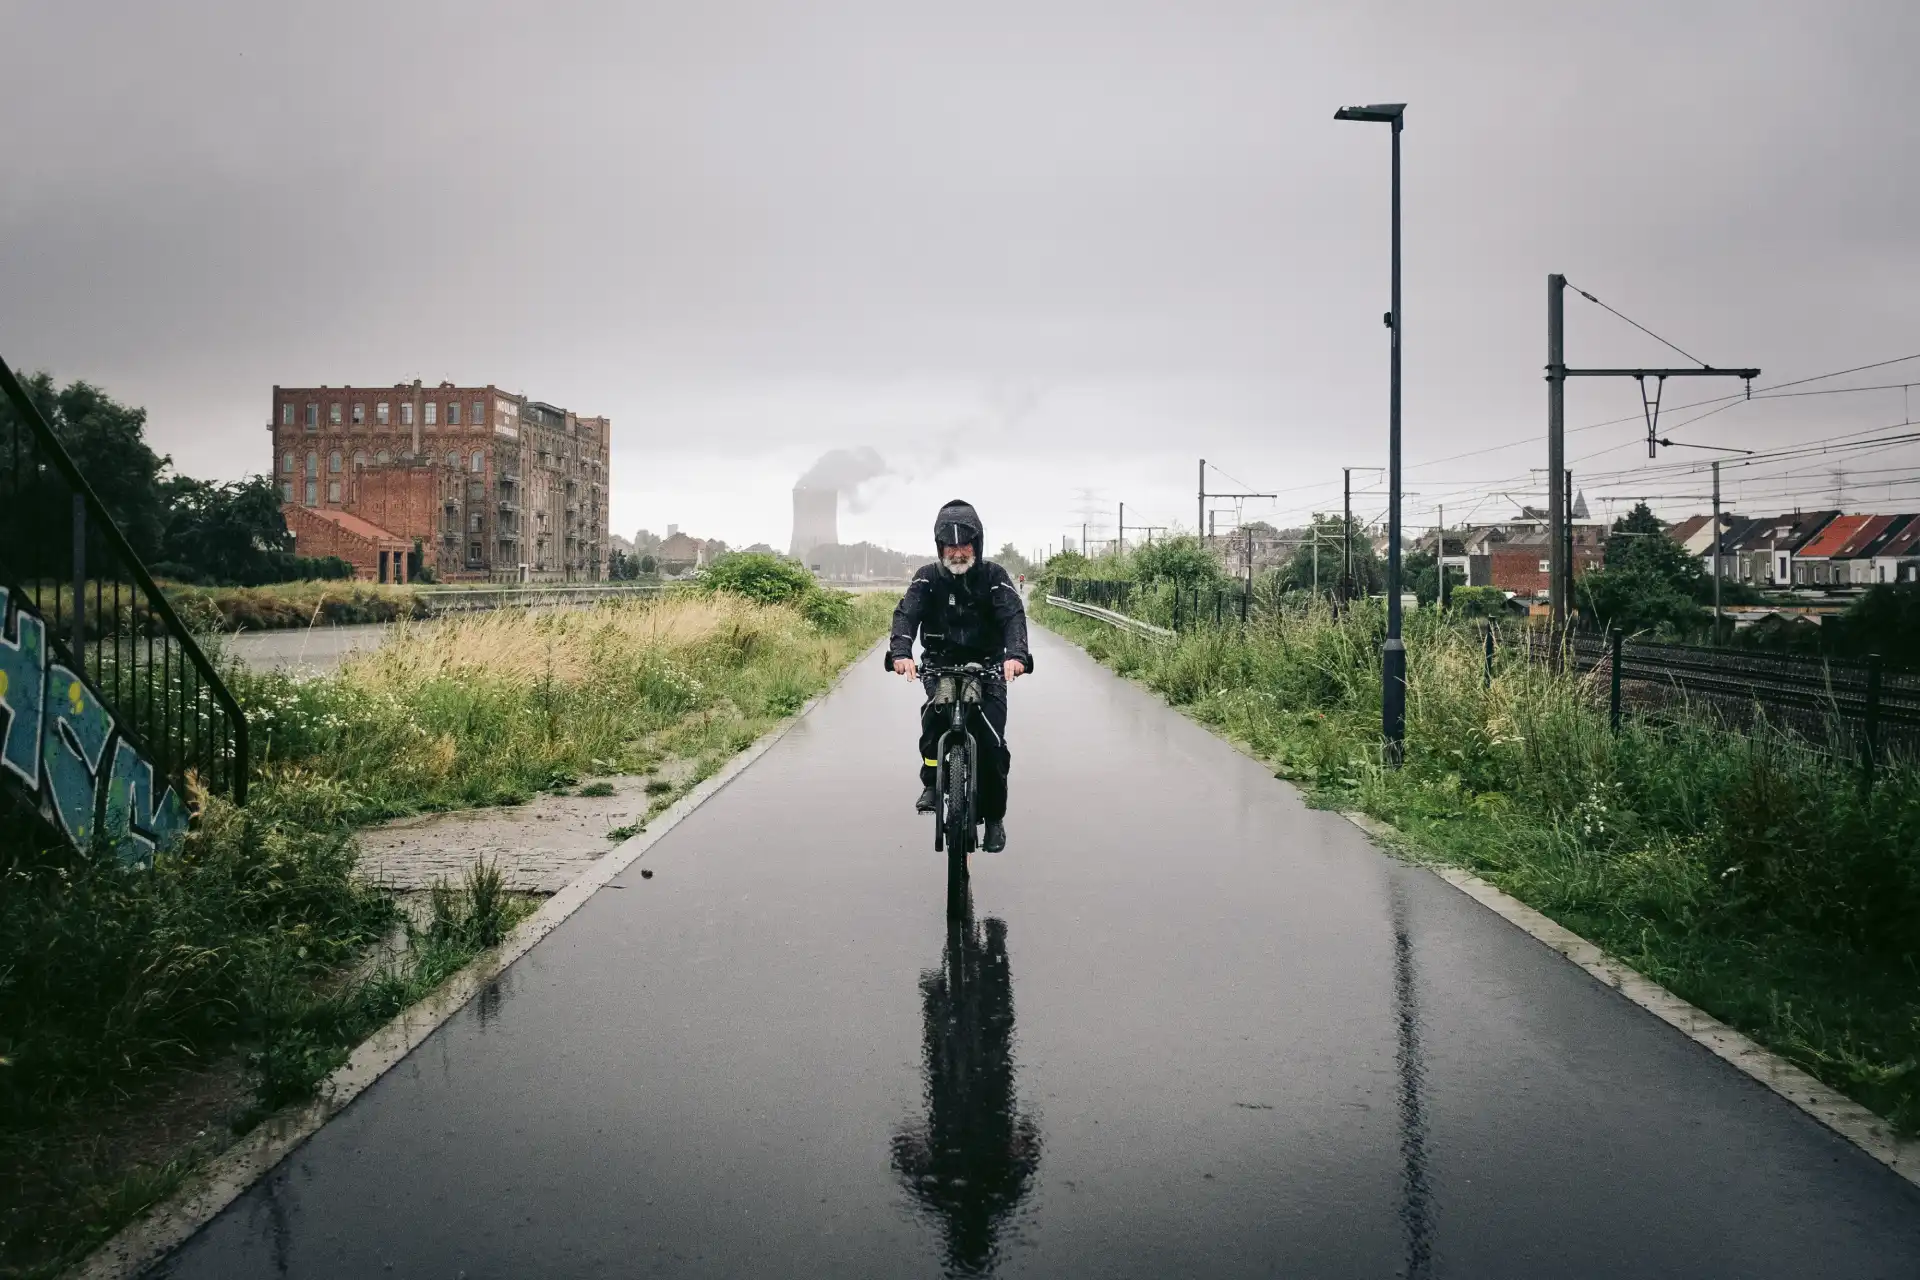 Fahrradfahren im Regen auf nasser Straße mit Regenbekleidung